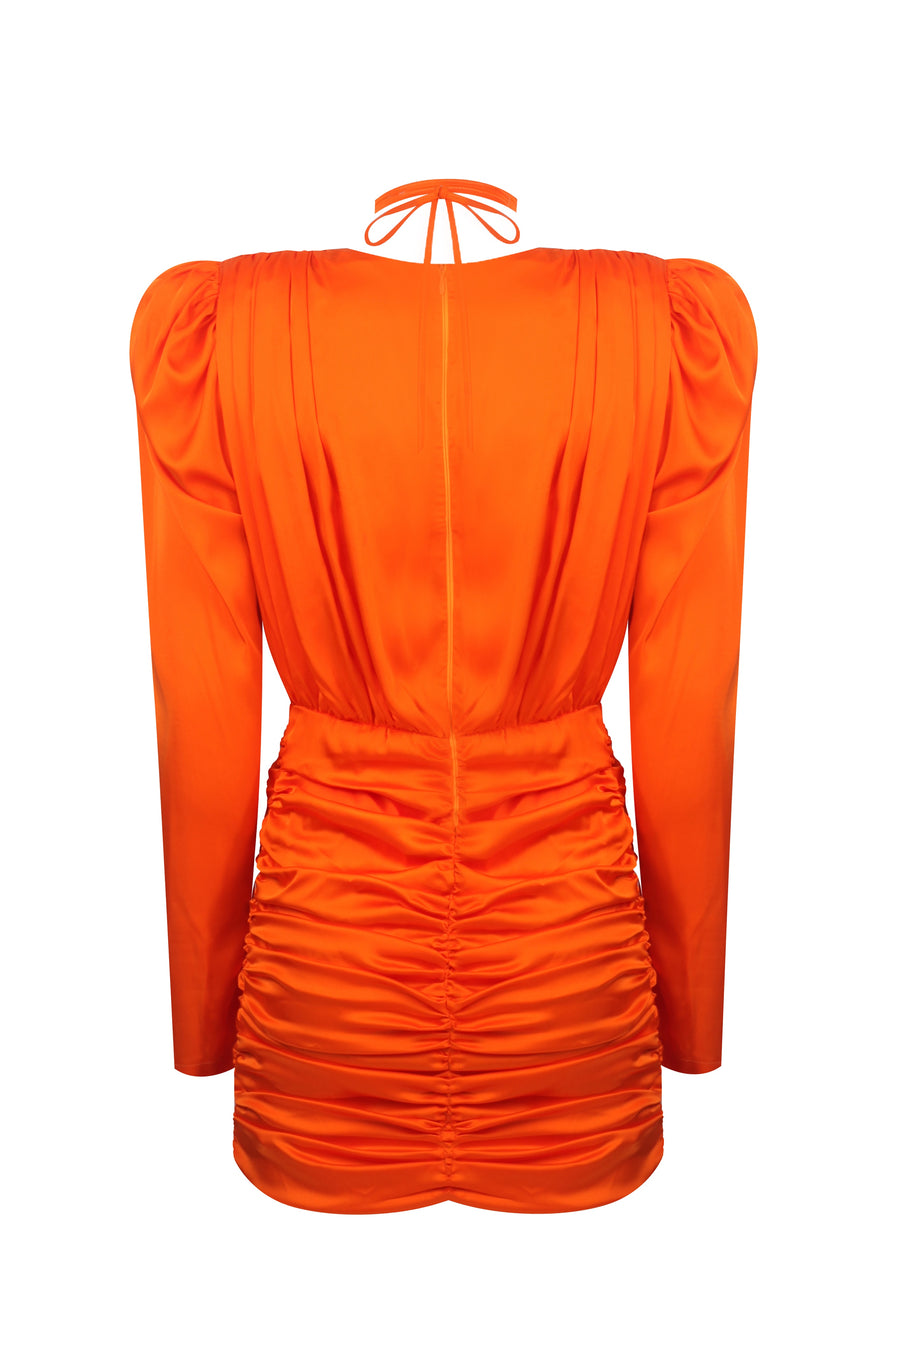 The Myla Fire Orange Mini Dress